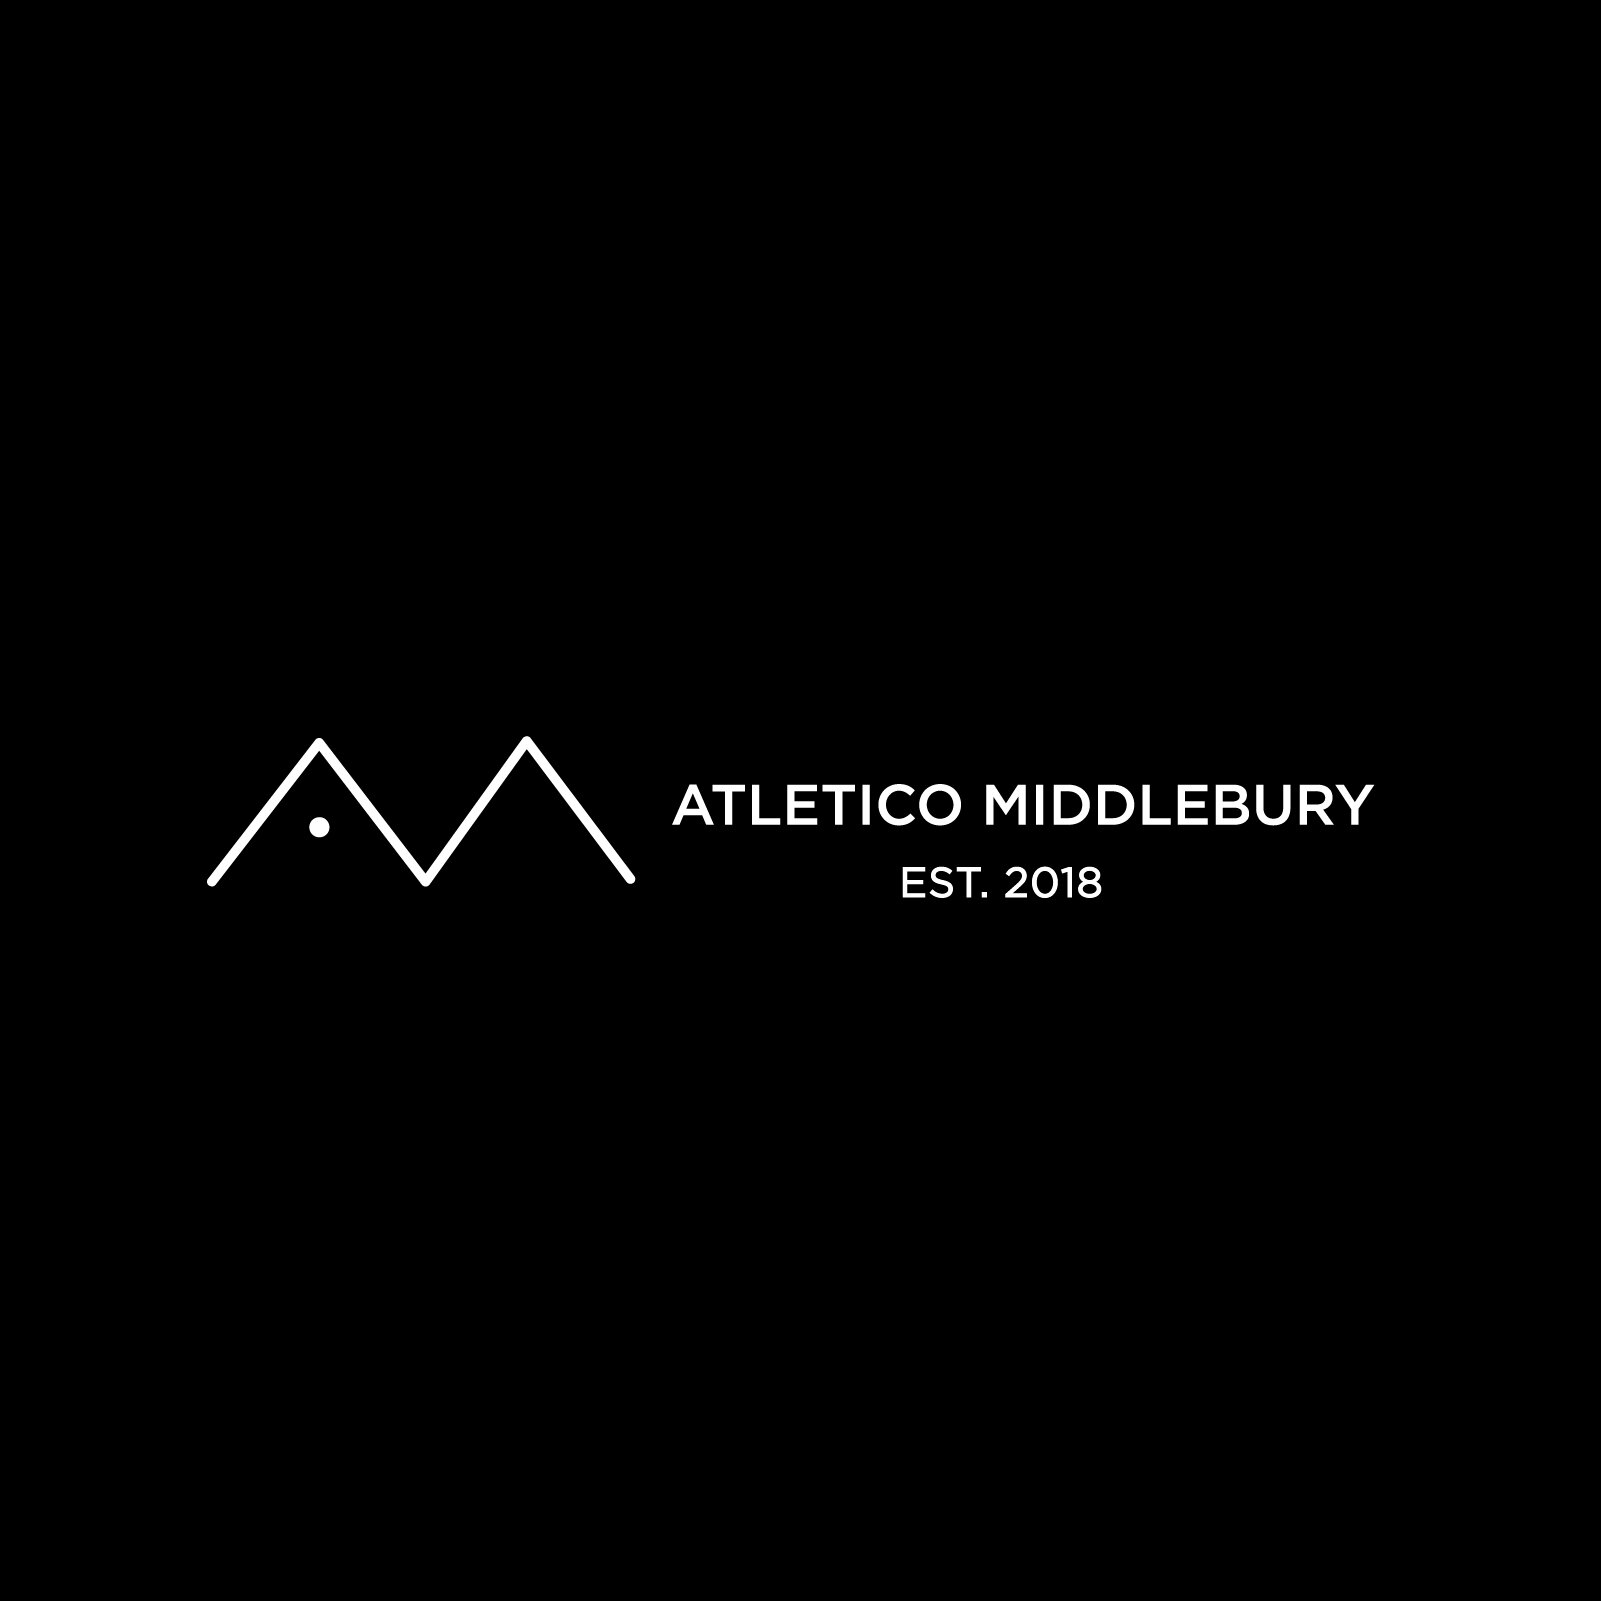 ATLETICO MIDDLEBURY_LO_FF-04.jpg